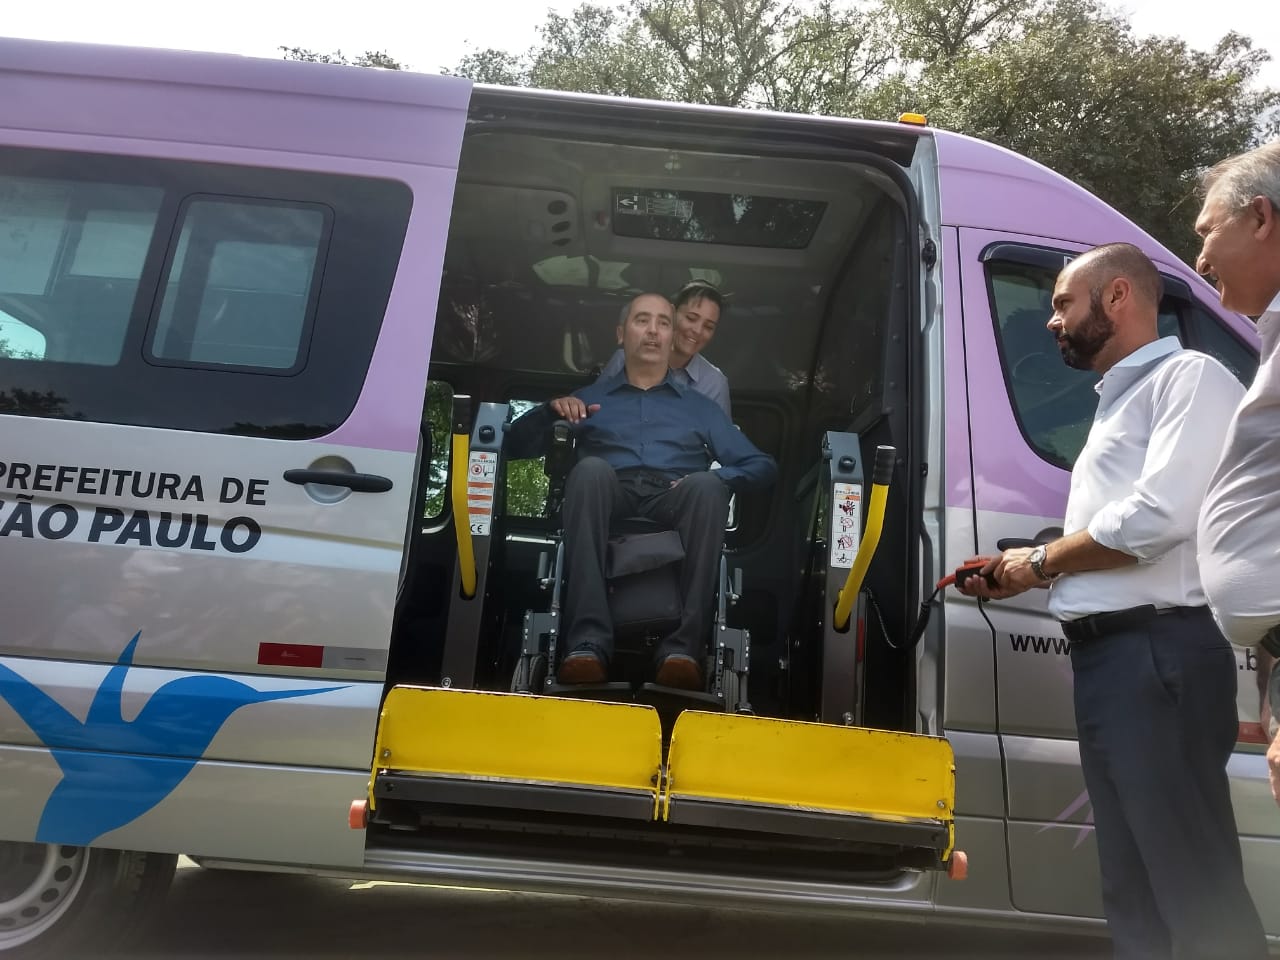 Uma mulher auxiliando uma pessoa em cadeira de rodas sendo retirada da van do serviço Atende+, do lado de fora dois homens, um operando o elevador da van e outro observando a ação.